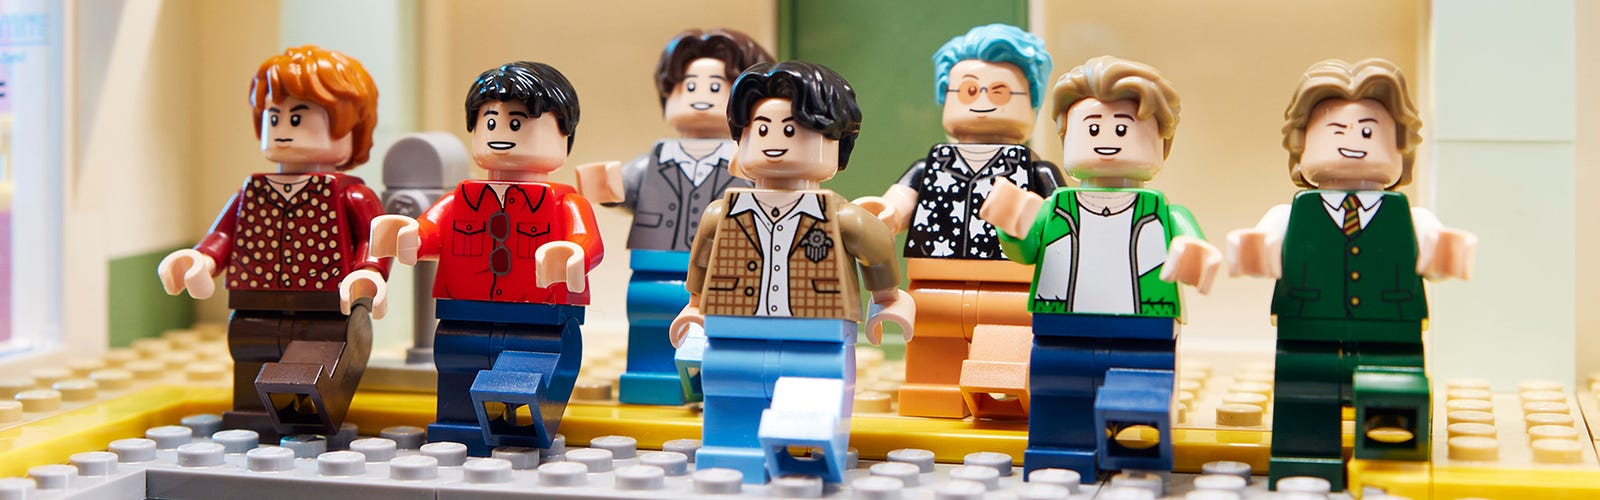 Ce fan de LEGO a réalisé un incroyable set en hommage aux